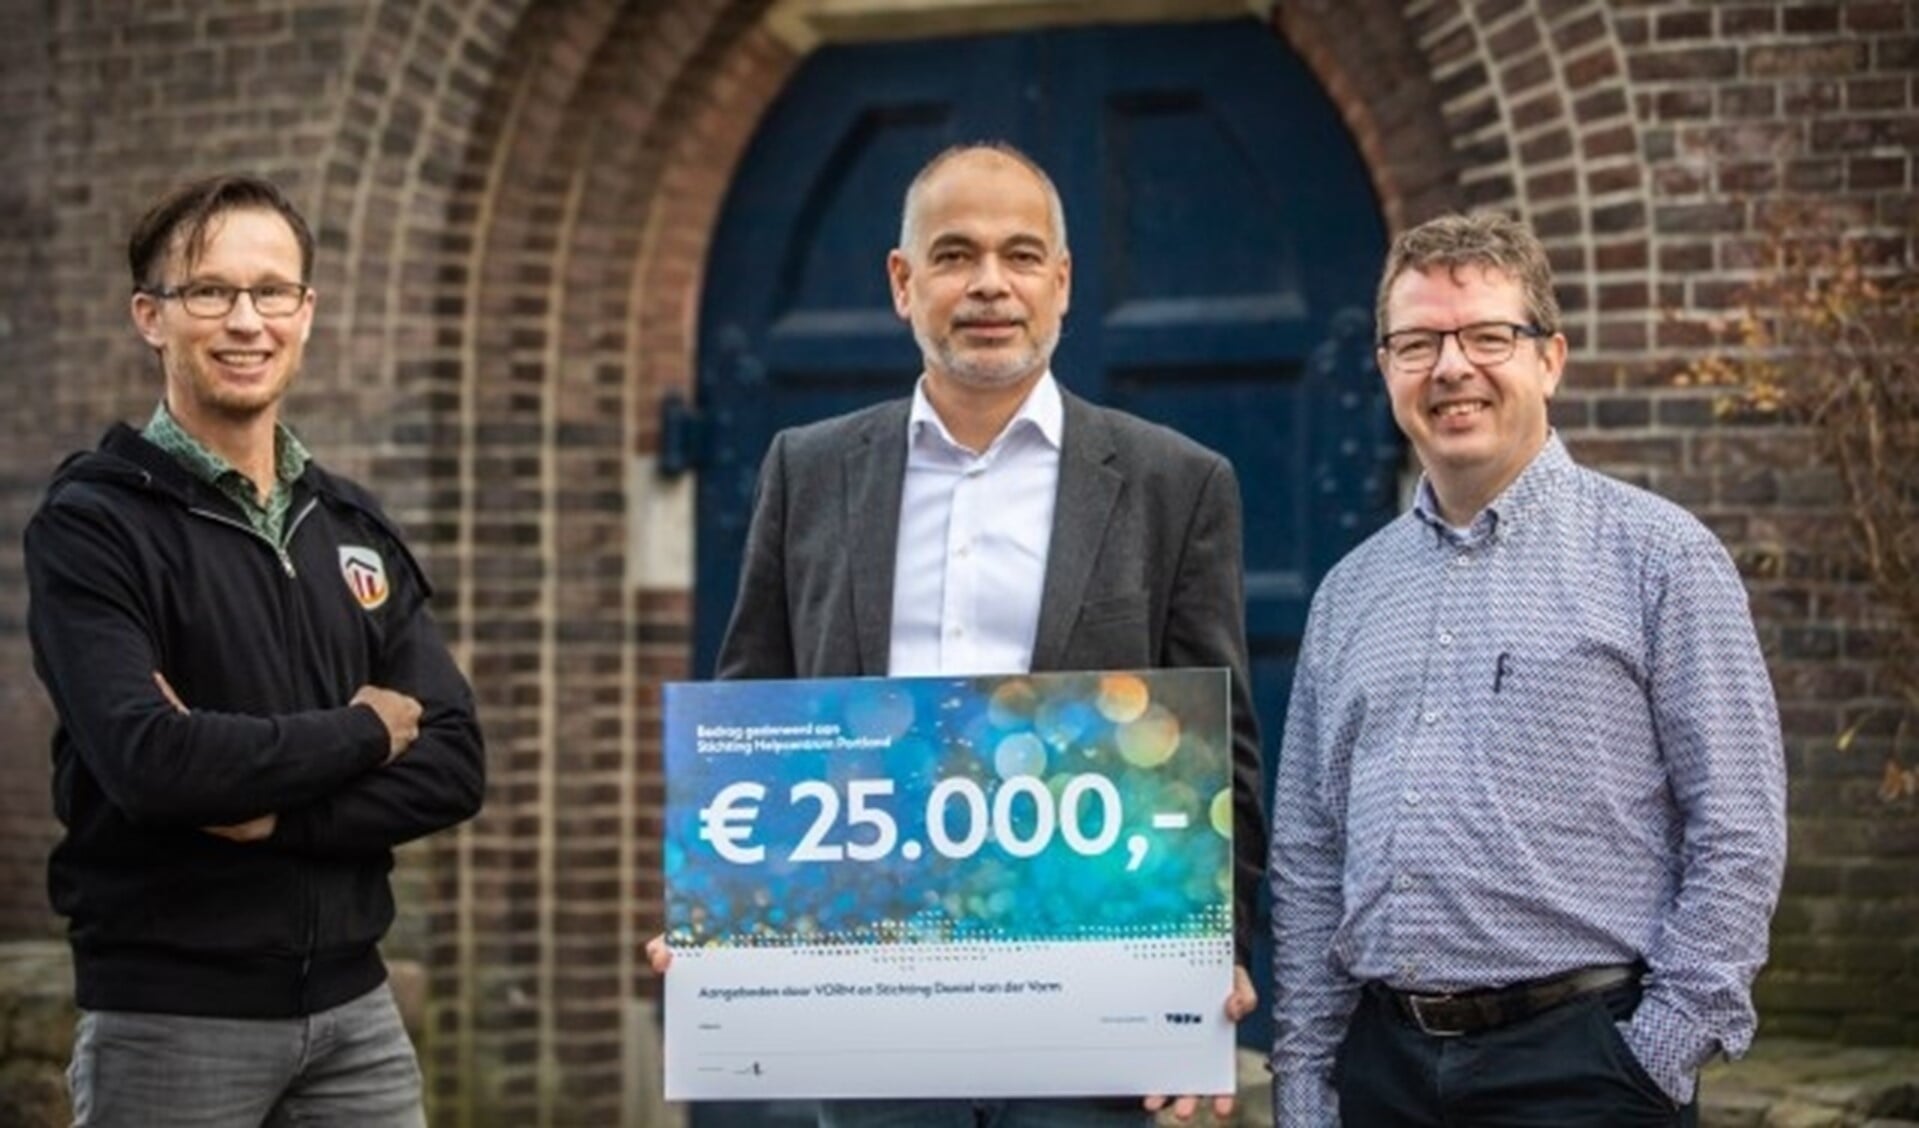 Directeur Daan van der Vorm (midden) reikt de cheque uit aan Daniel van der Ham (links) en penningmeester Martin Padmos 